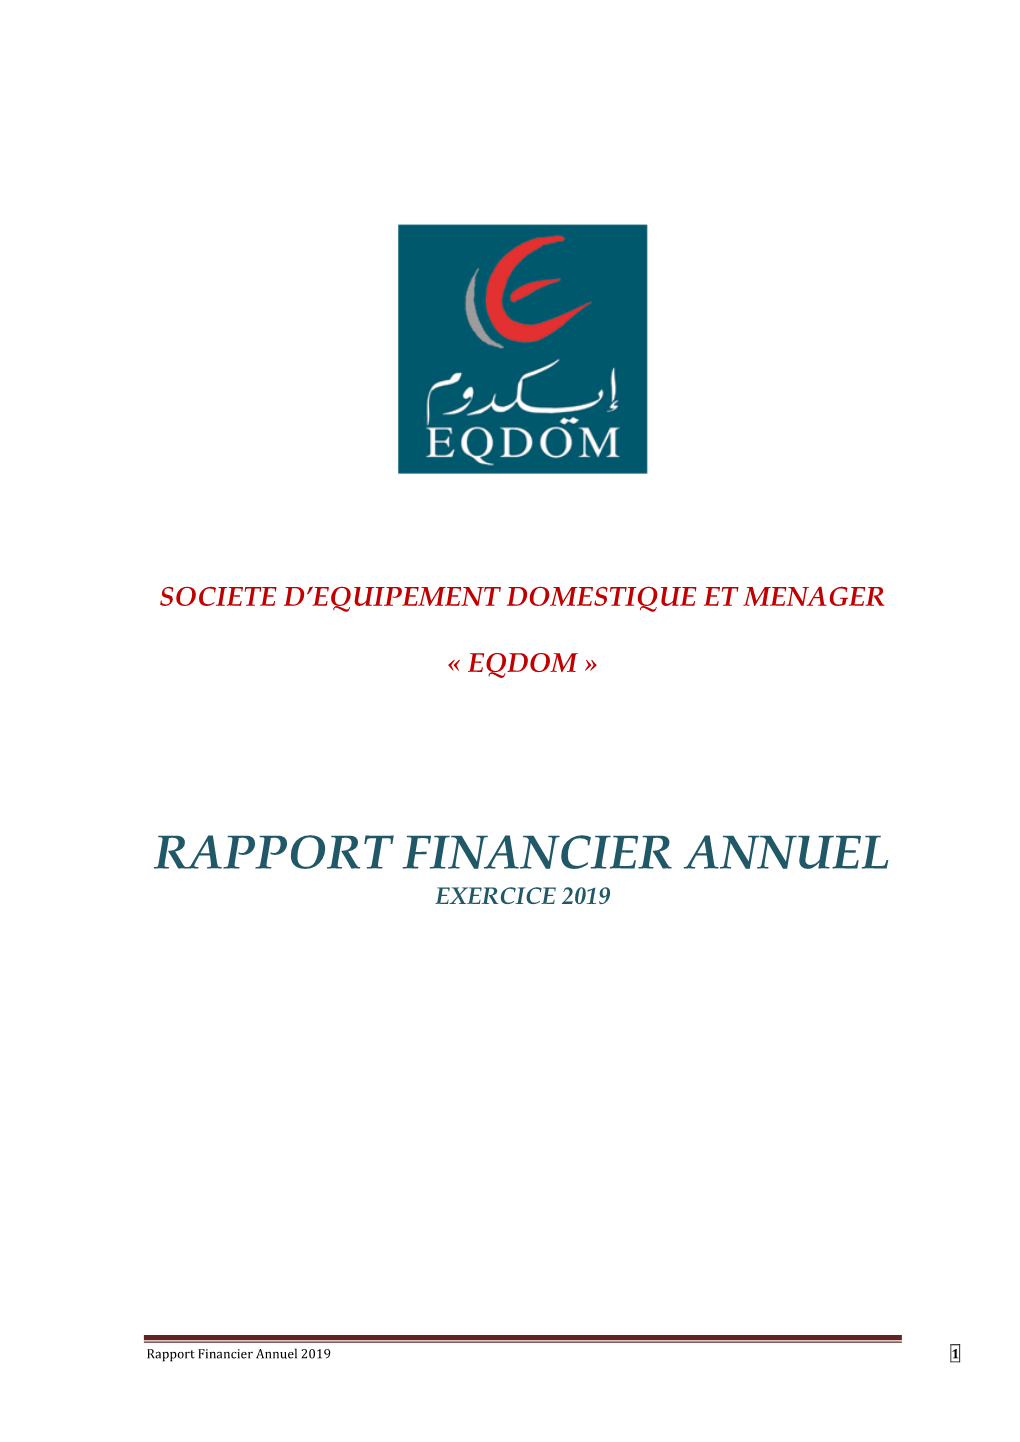 Rapport Financier Annuel Exercice 2019